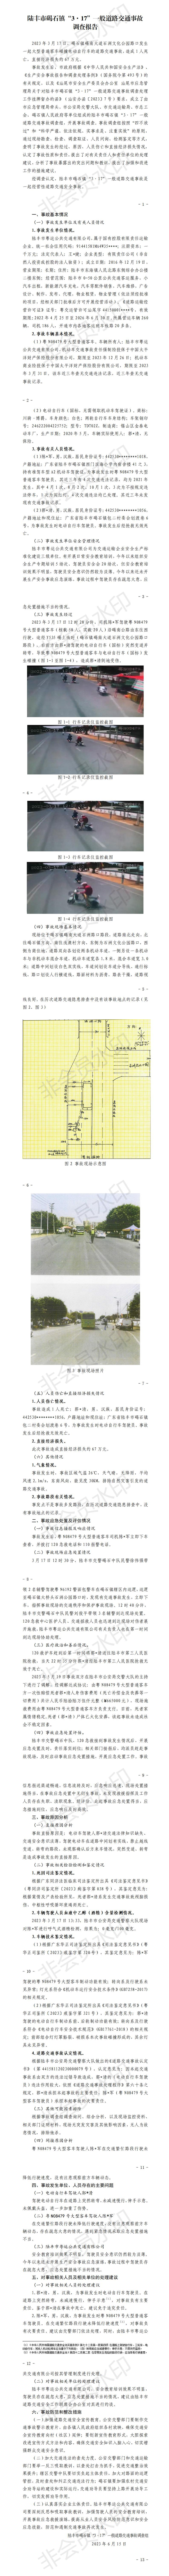 陆丰市碣石镇“3&middot;17”一般道路交通事故调查报告（网上公布版）.jpg